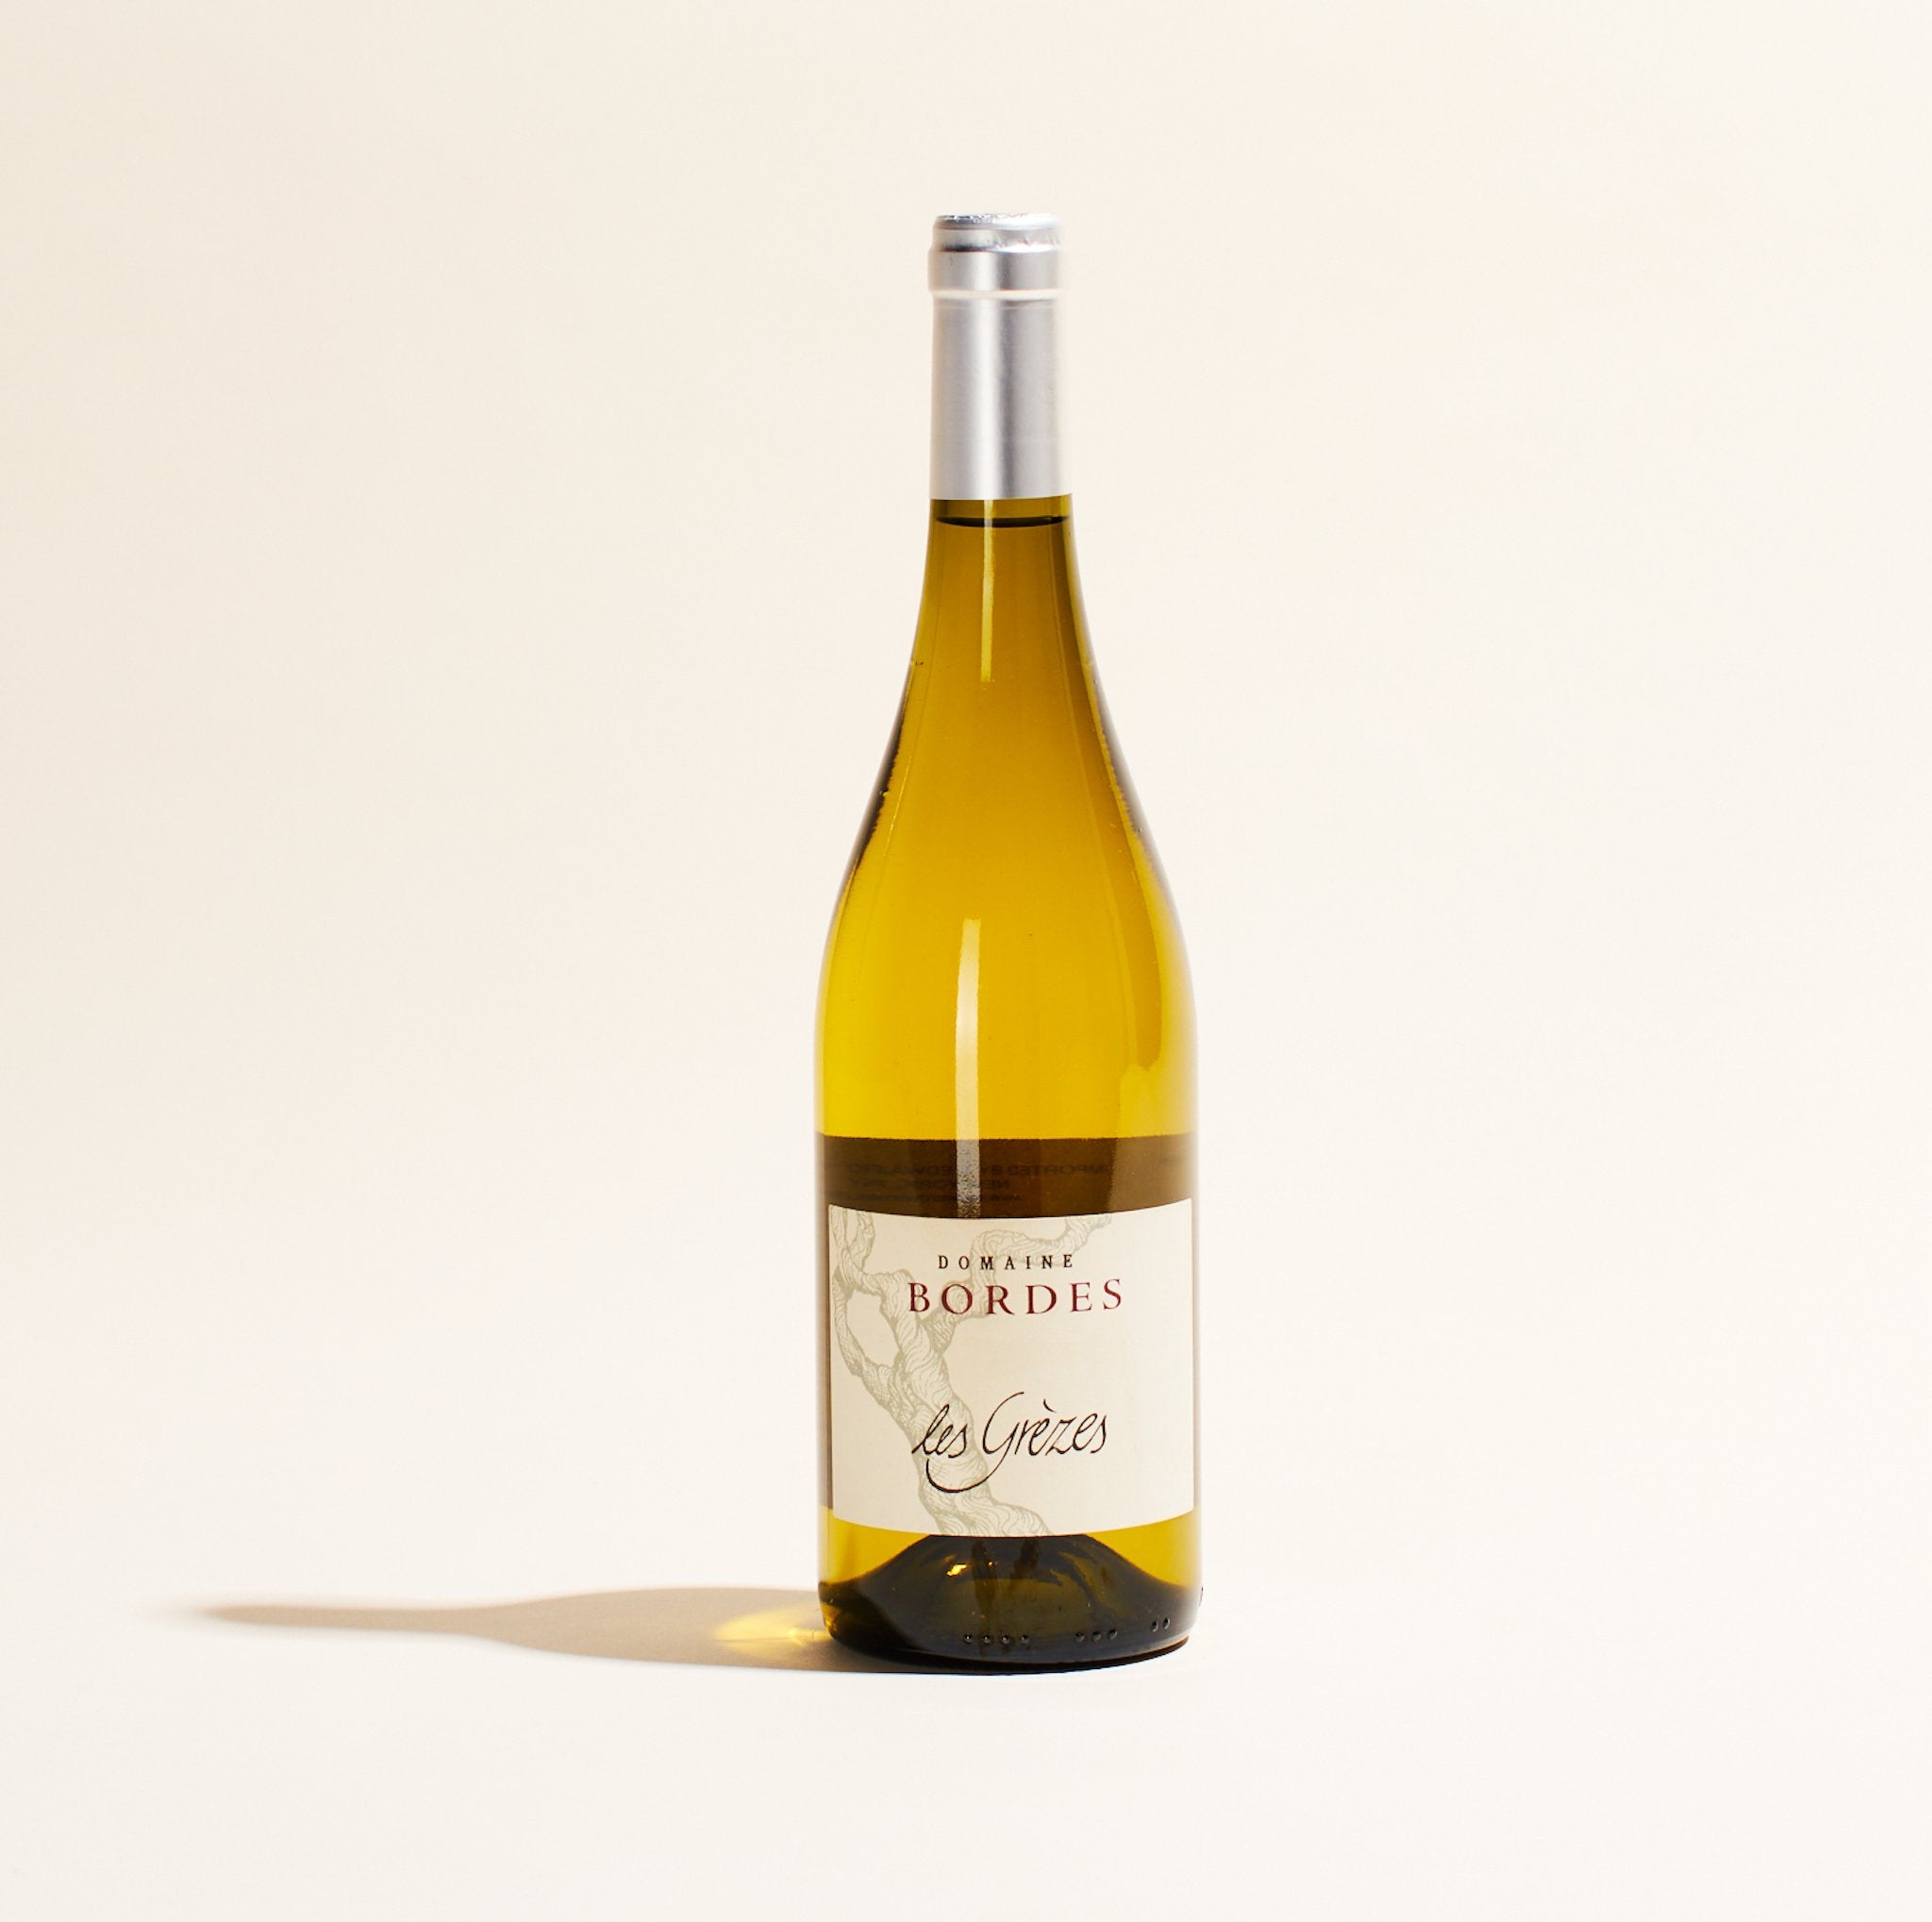 les grezes domaine bordes languedoc france natural white wine bottle